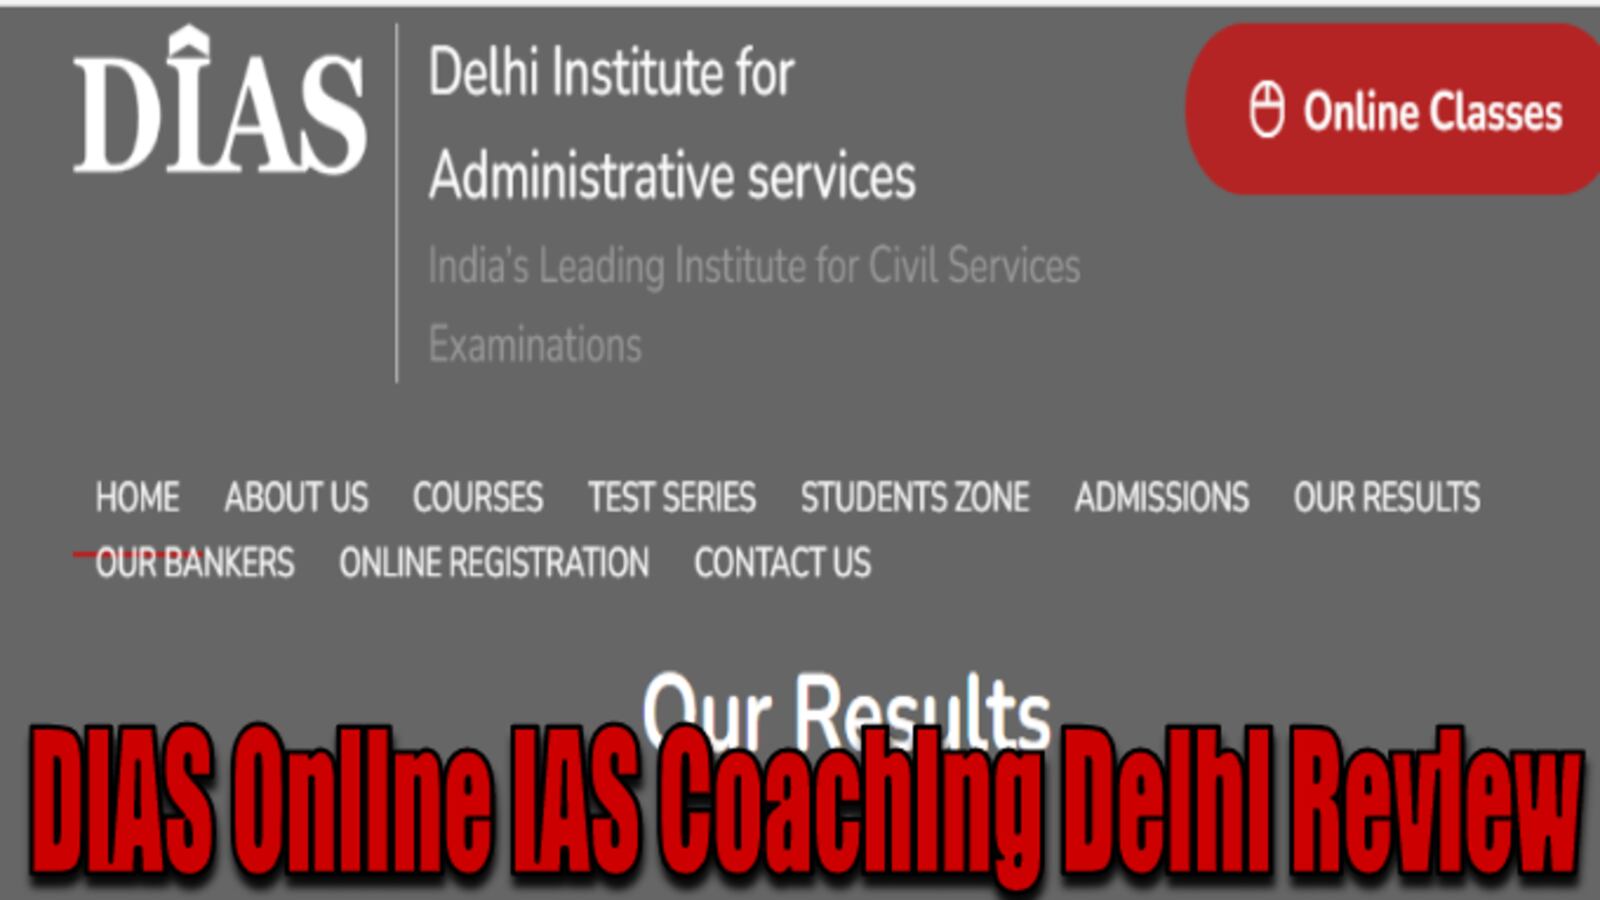 DIAS Online IAS Coaching Delhi Review